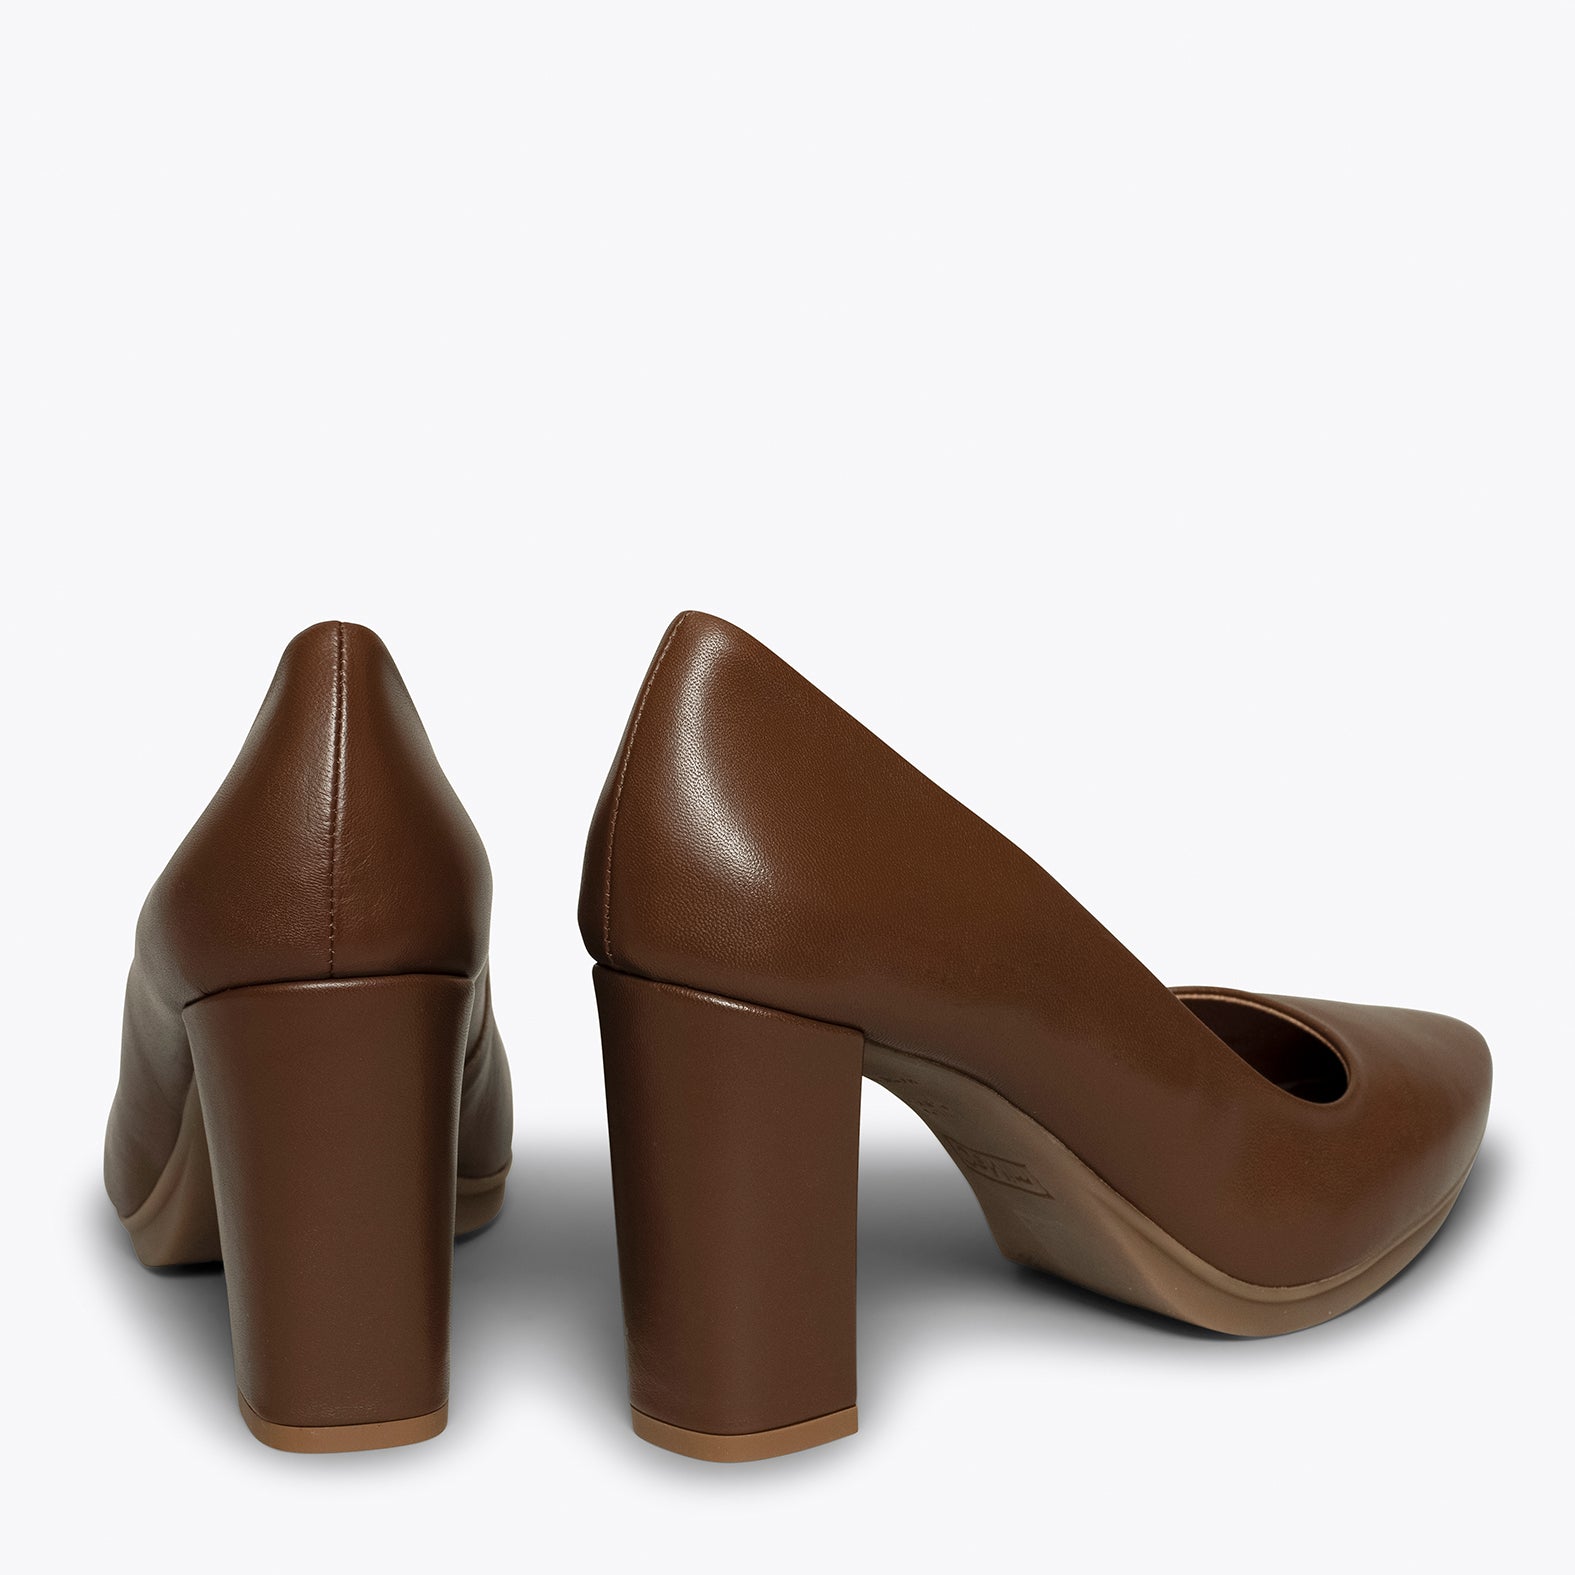 URBAN SALON - Zapatos MARRONES de piel y tacón alto